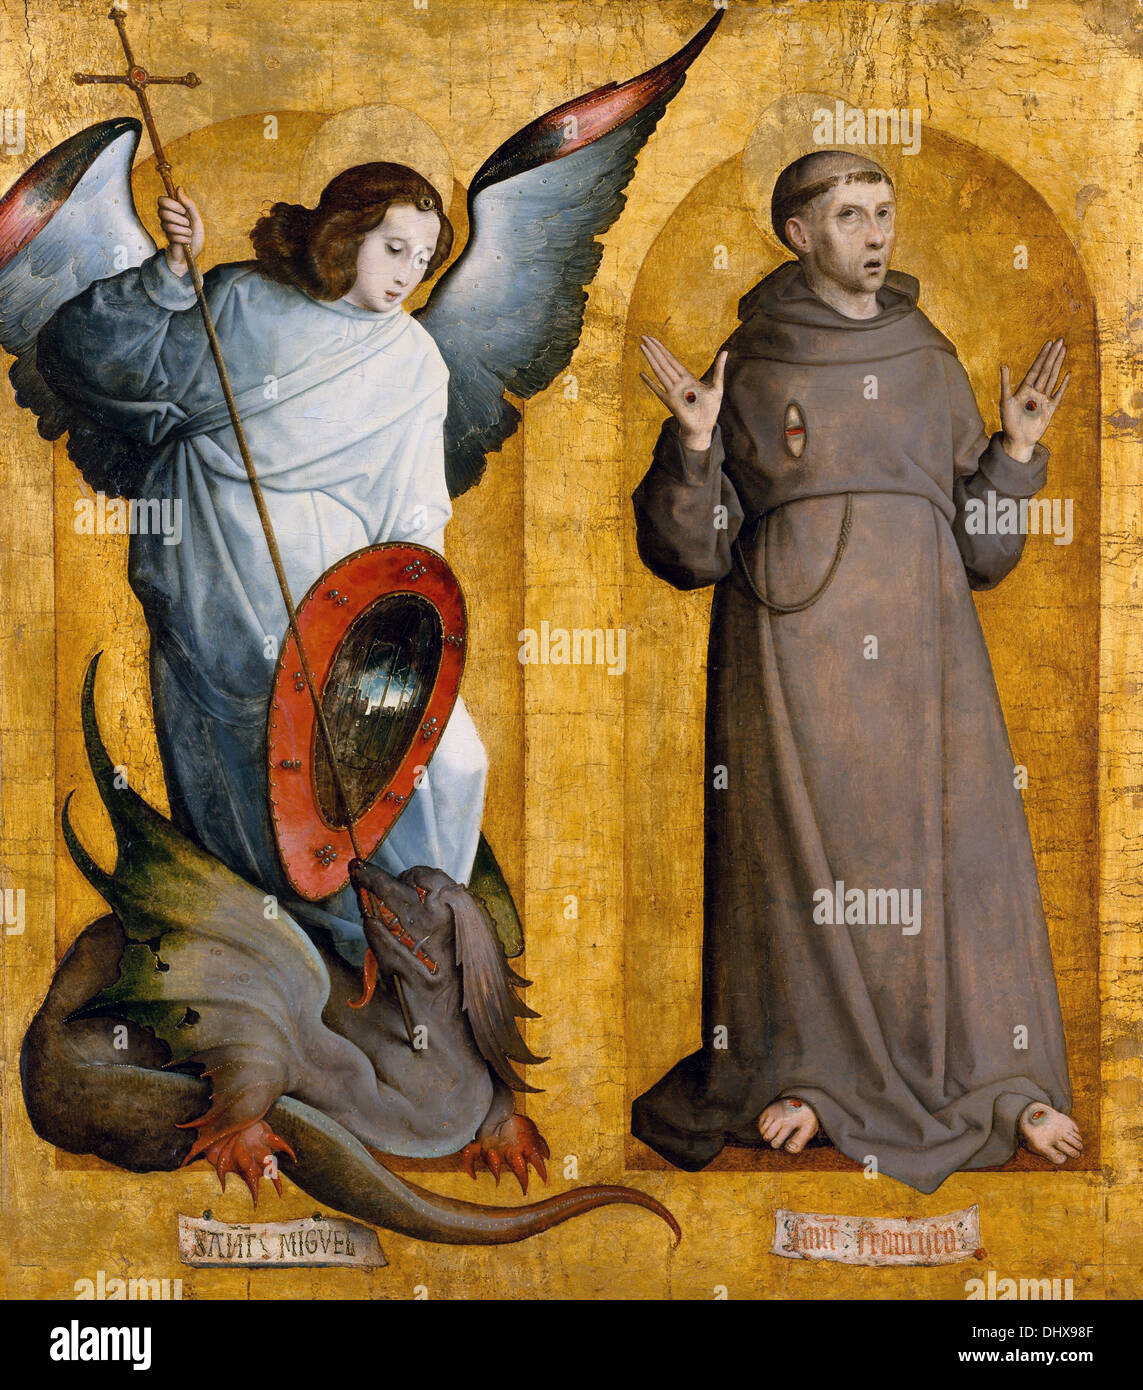 Saints Michel et Francis - par Juan de Flandes, 1509 Banque D'Images